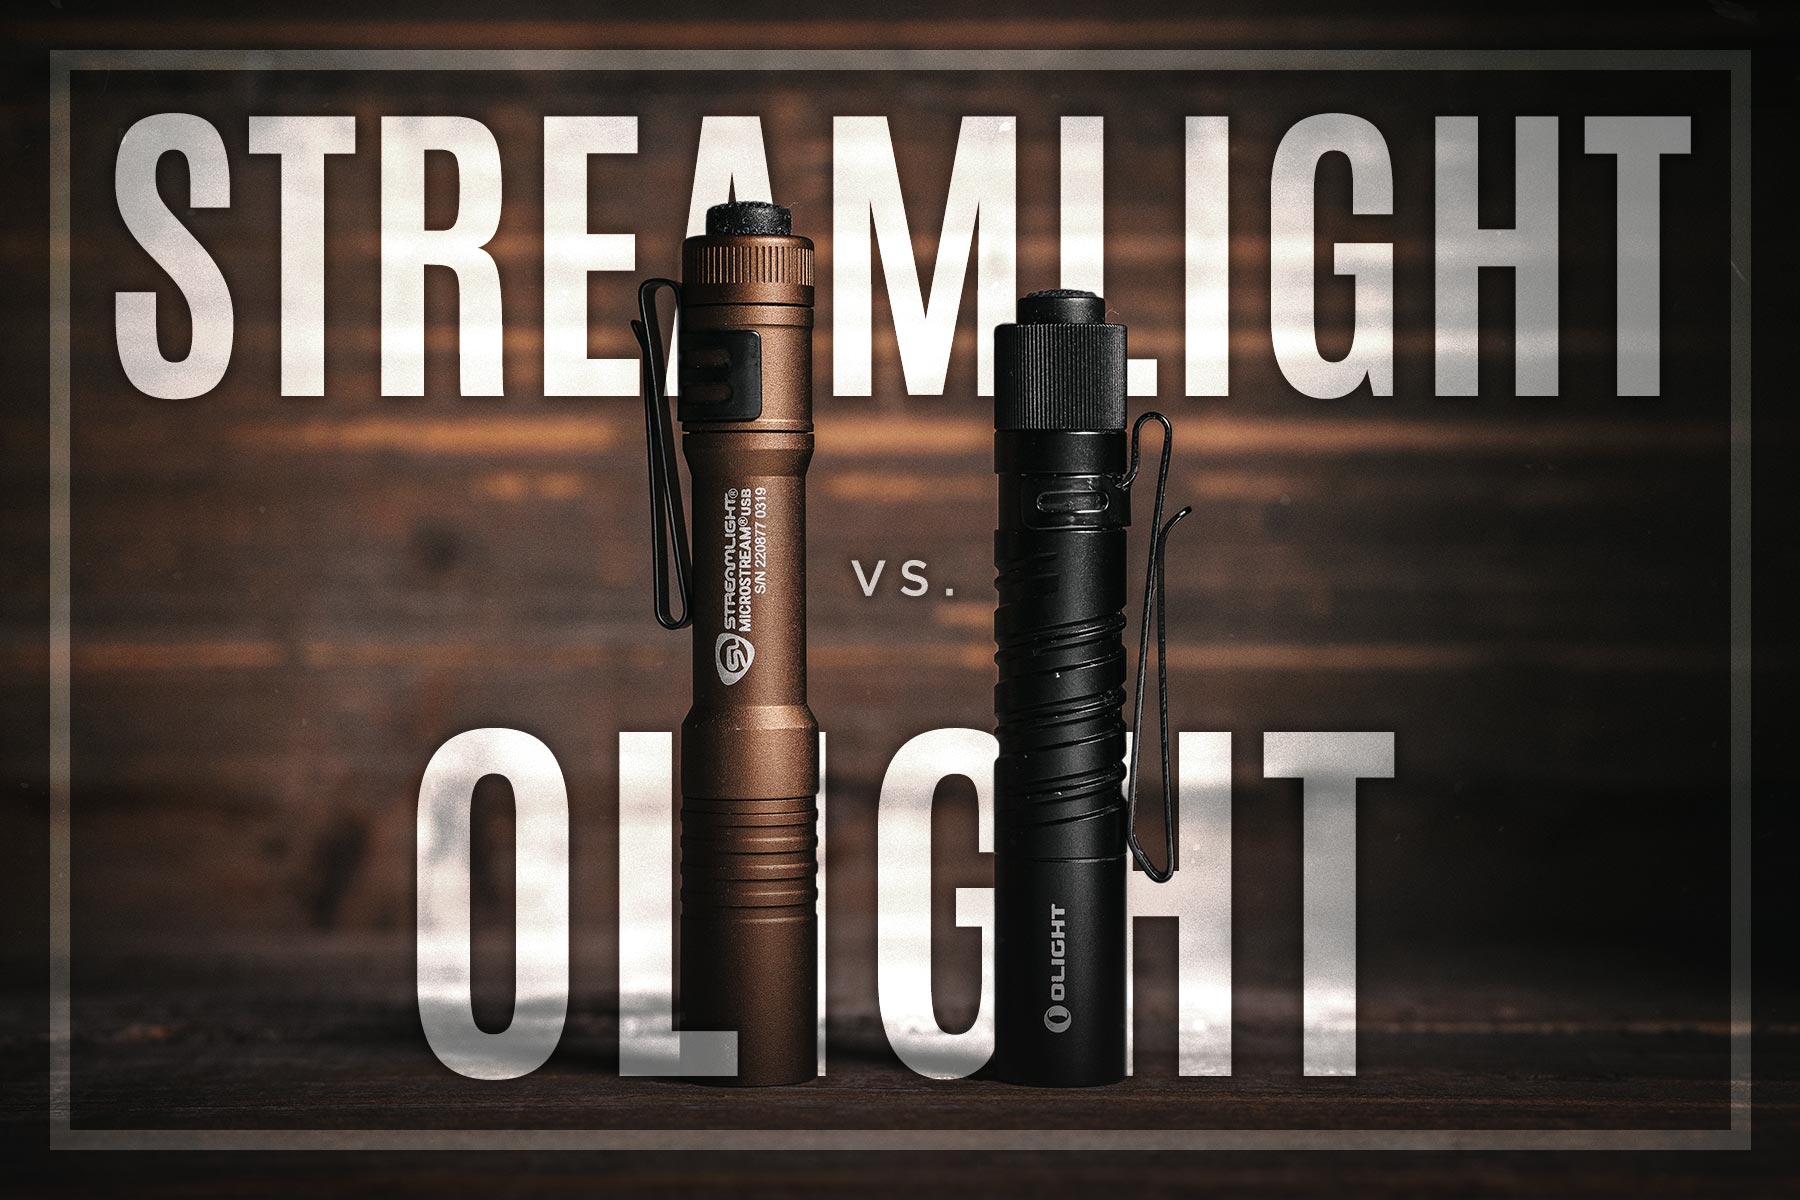 Streamlight vs Olight